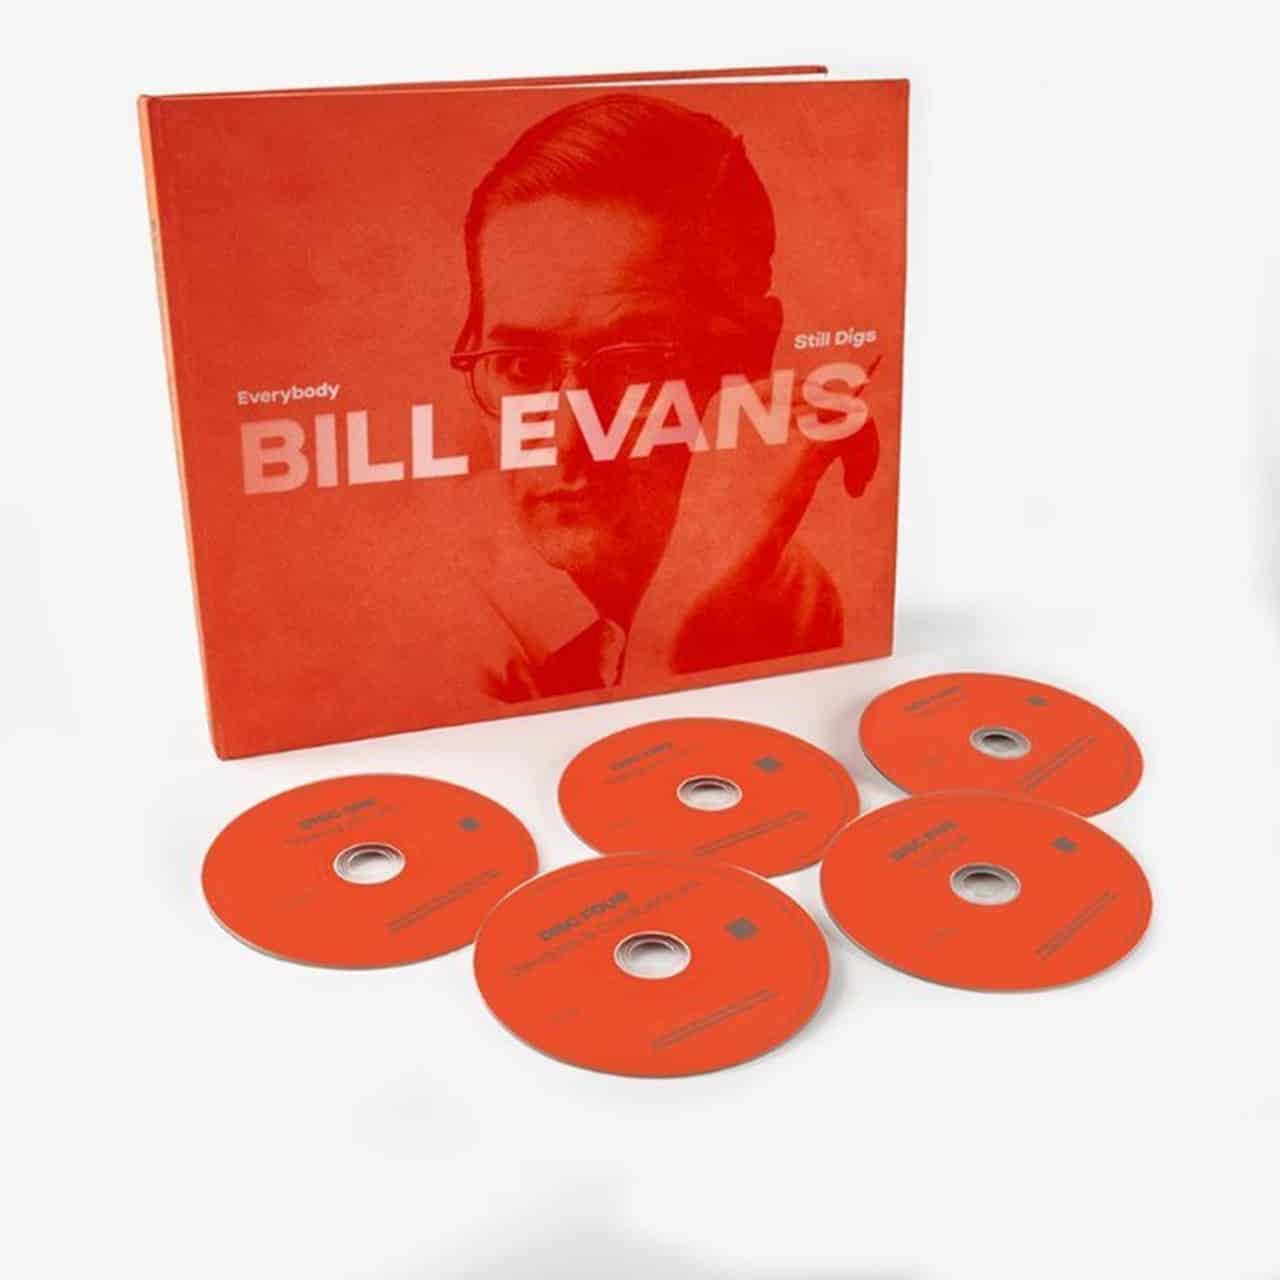 BILL EVANS - EVERYBODY STILL DIGS